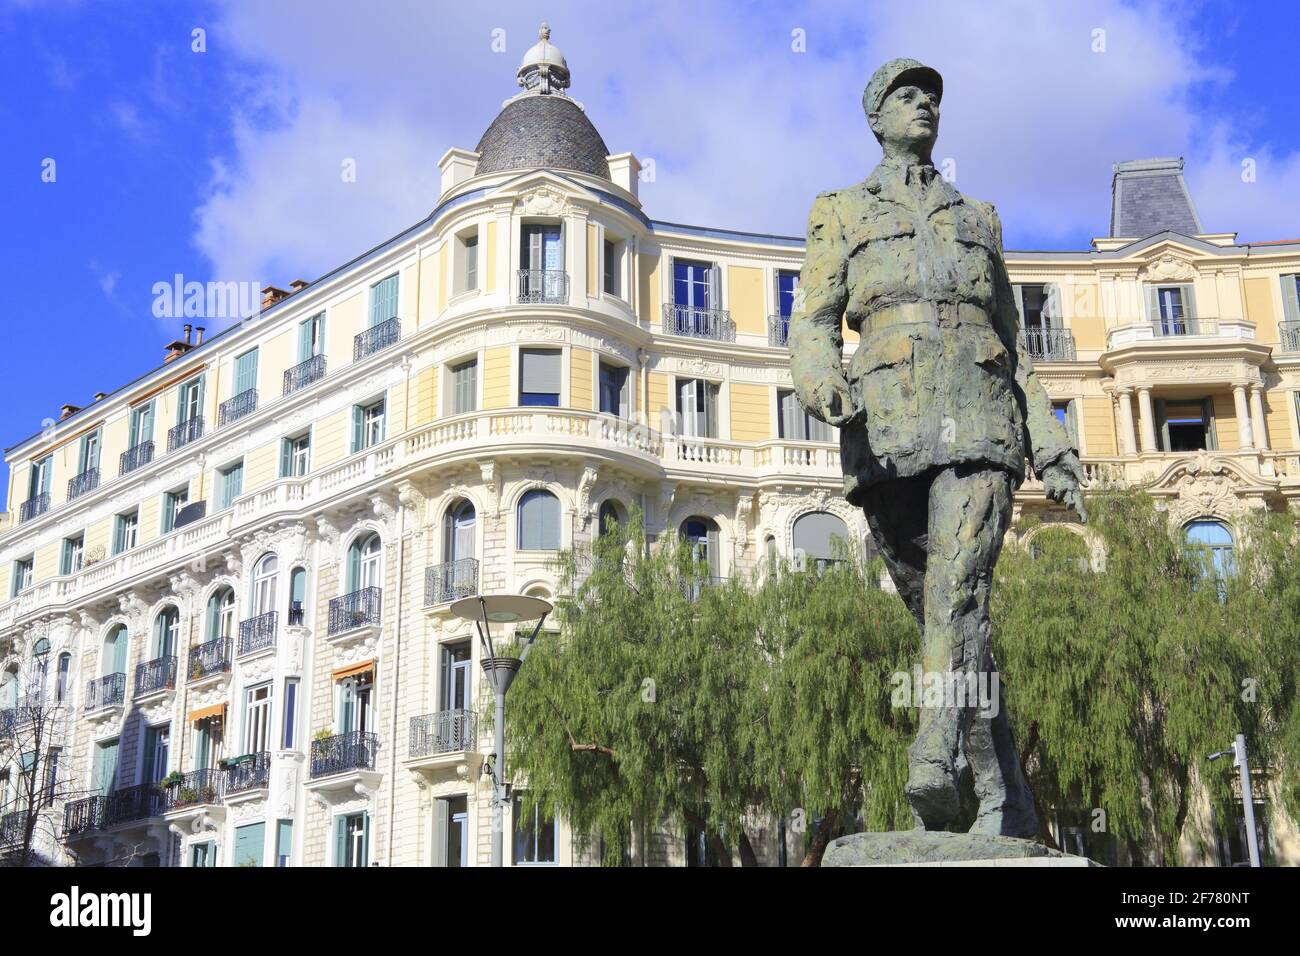 France, Alpes Maritimes, Nice, quartier de la libération, place du général de Gaulle, statue de Charles de Gaulle conçue par le sculpteur Jean Cardot Banque D'Images